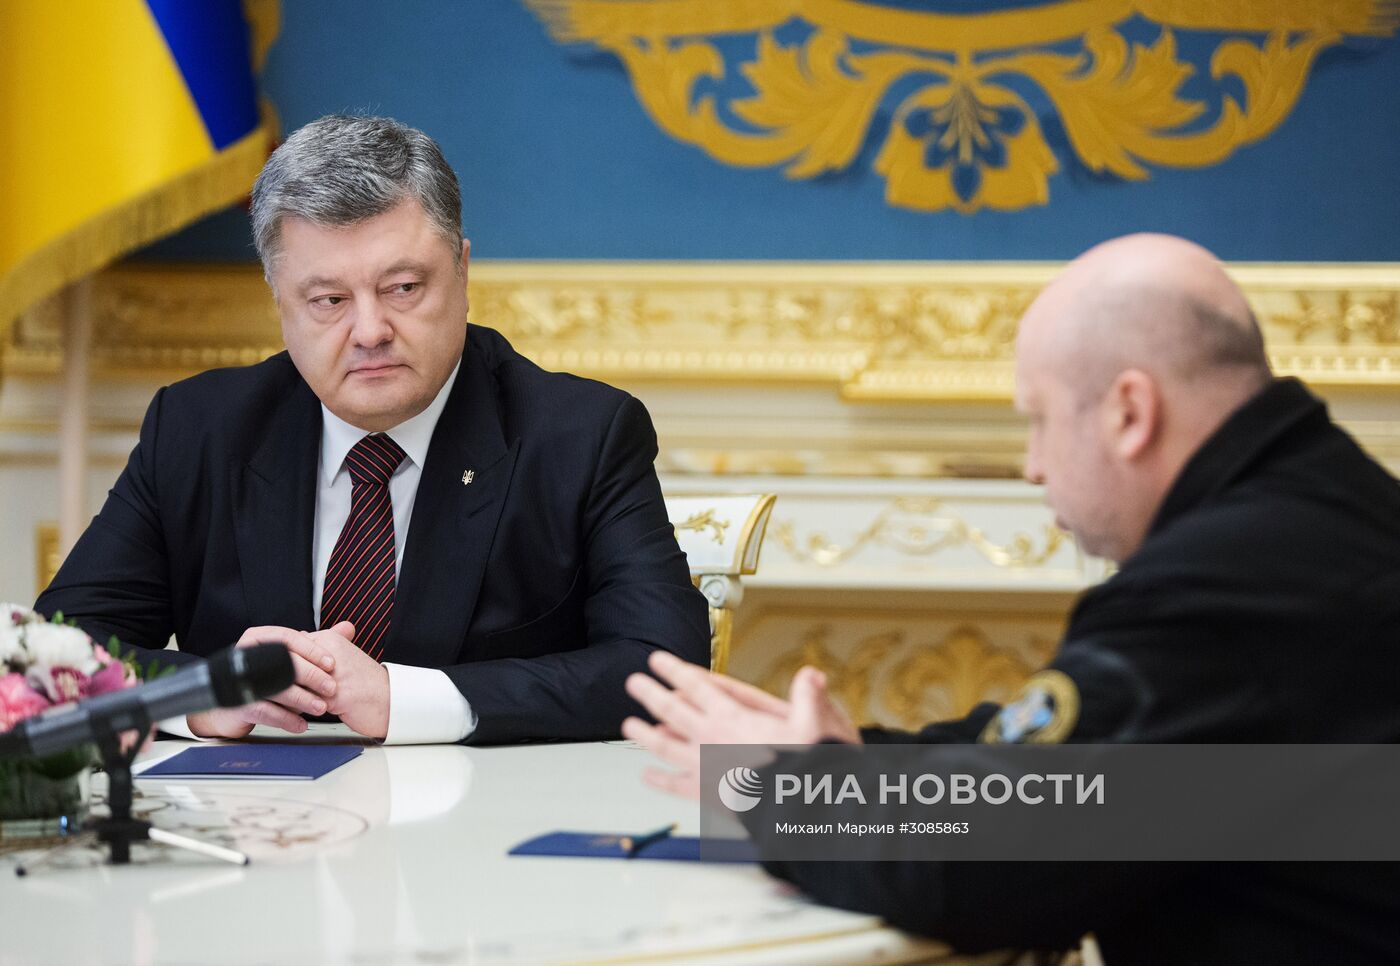 Президент Украины П. Порошенко провел совещание с Ю. Луценко и А. Турчиновым